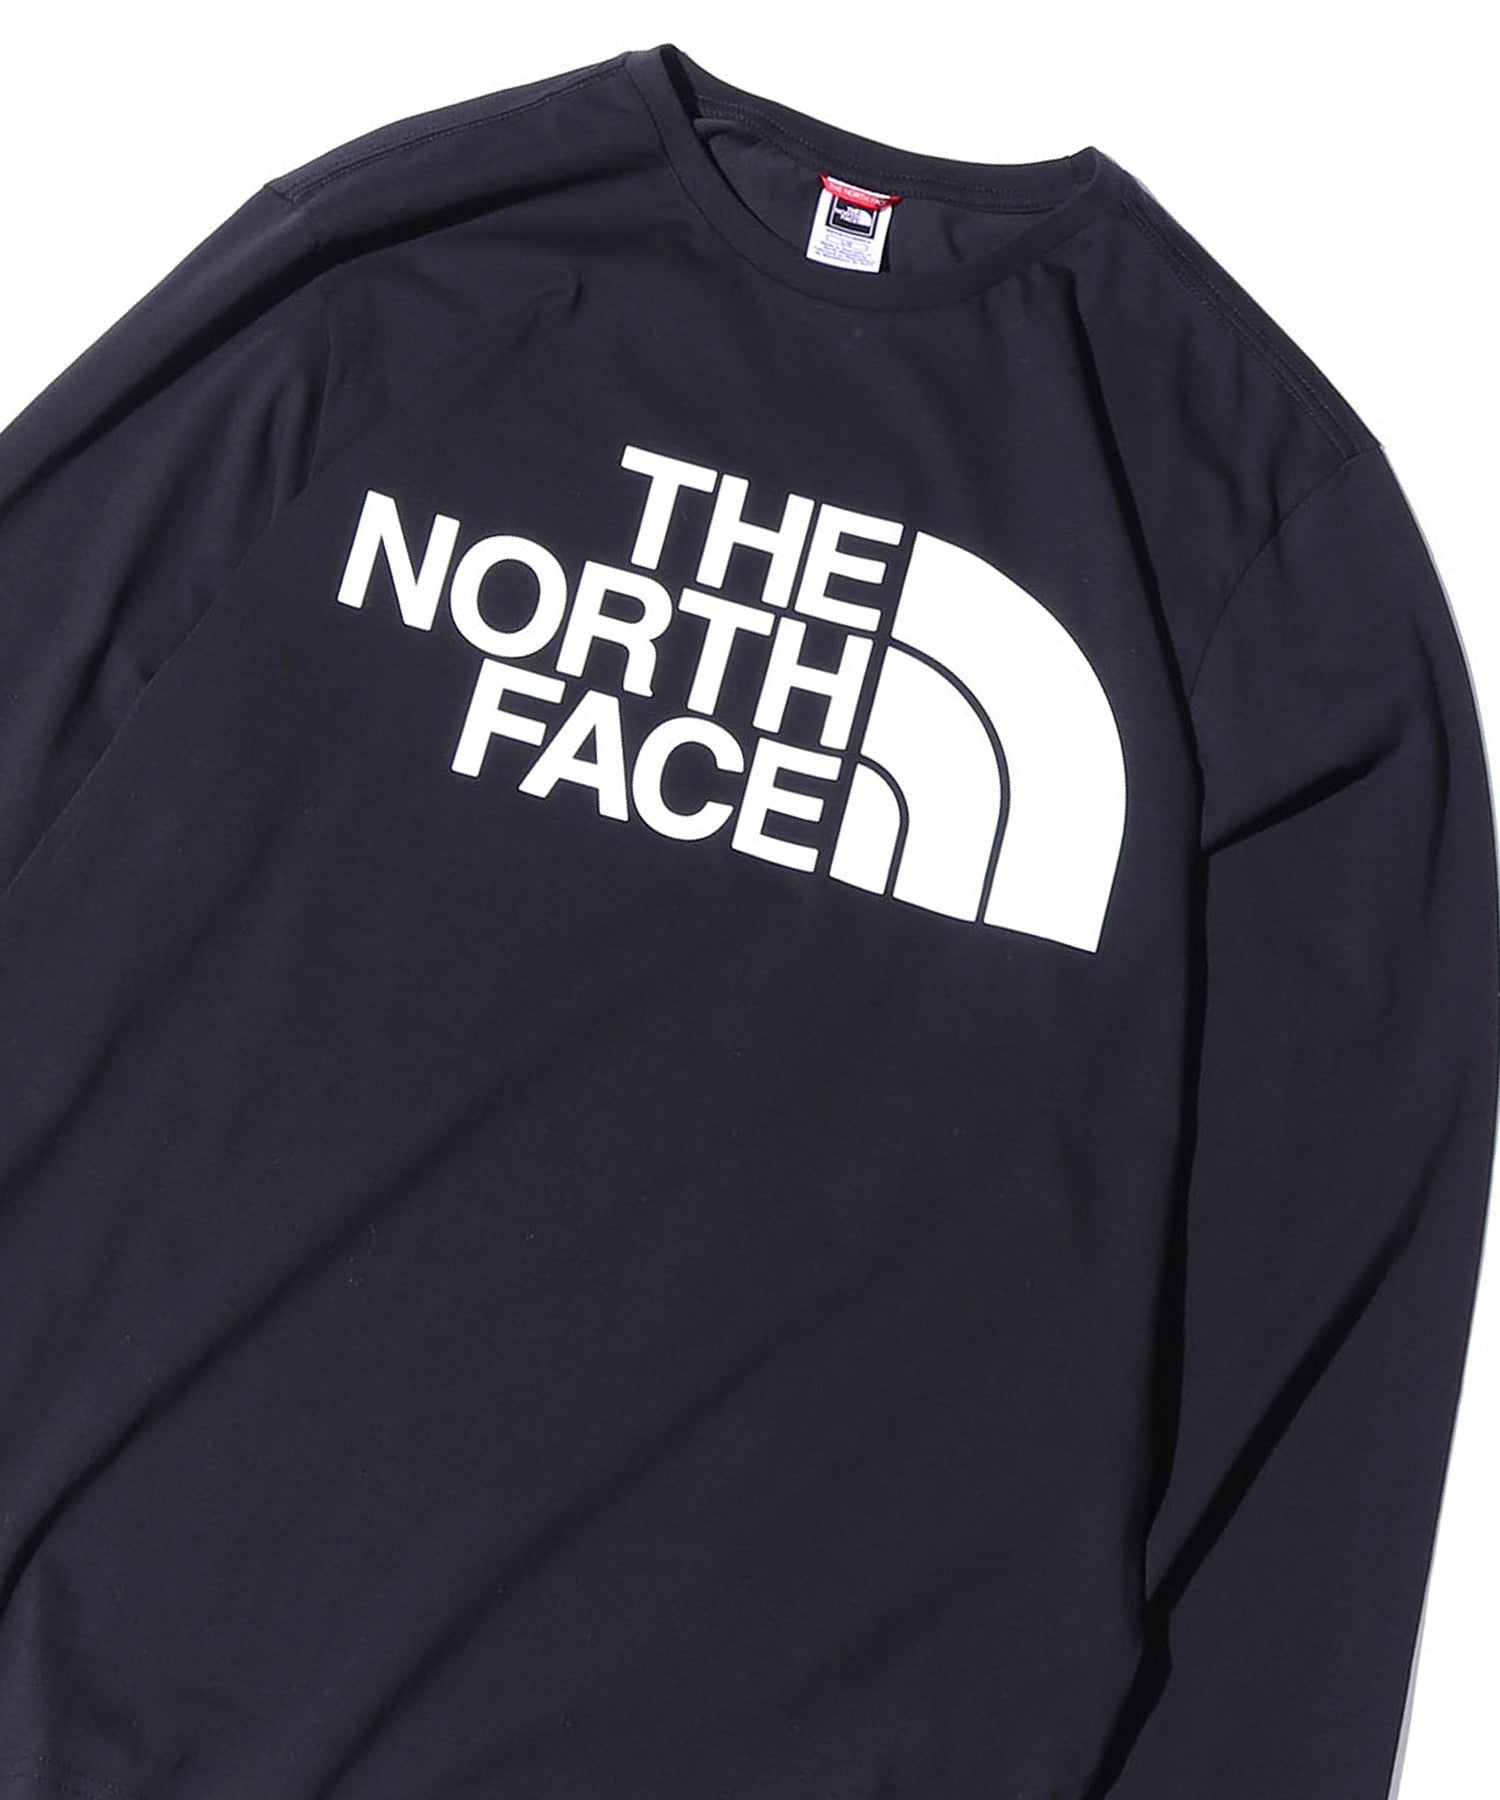 THE NORTH FACE/ザ・ノースフェイス M STANDARD LS TEE